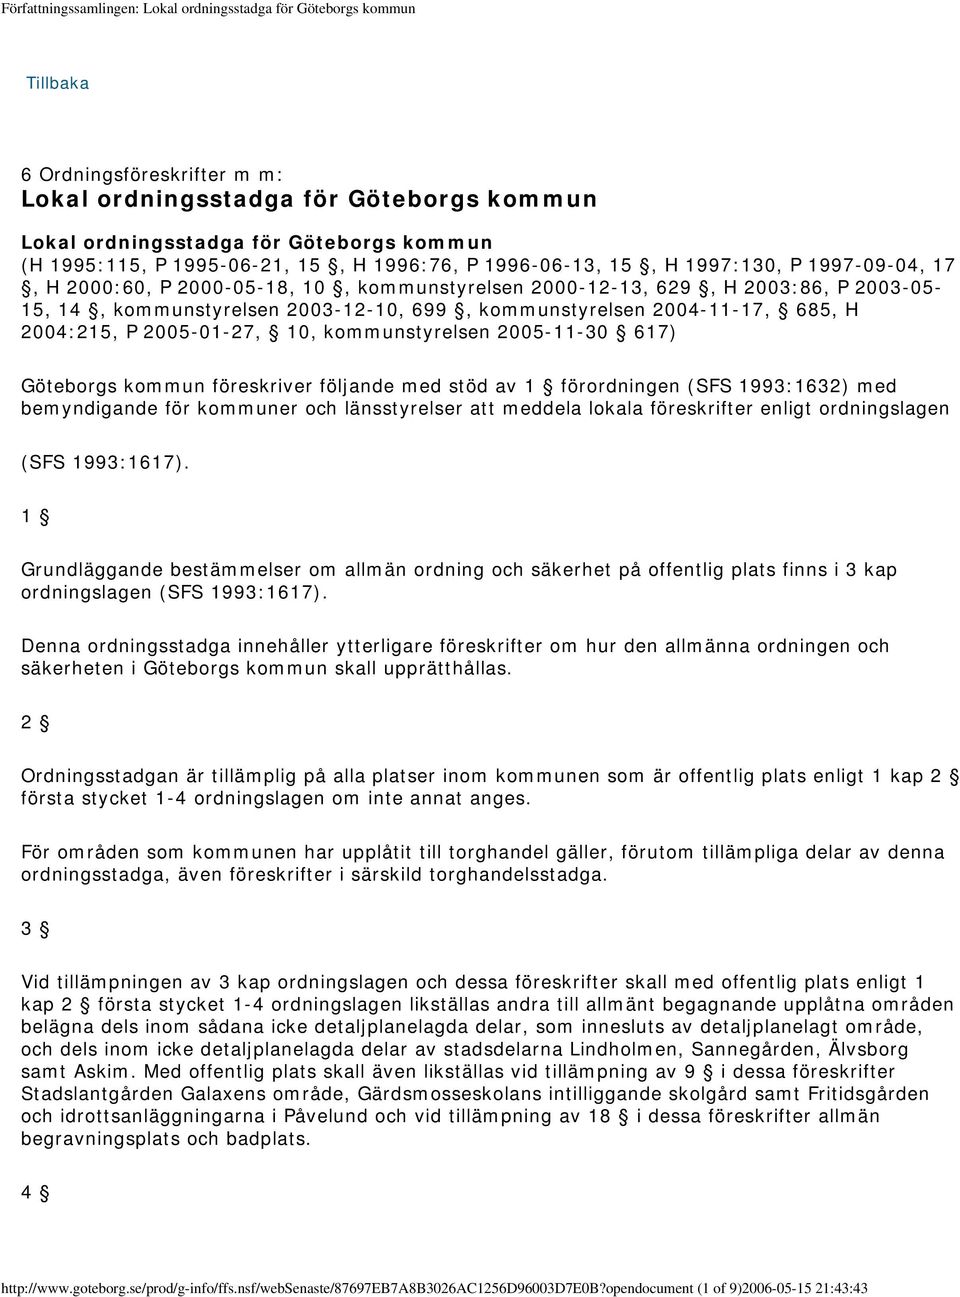 10, kommunstyrelsen 2005-11-30 617) Göteborgs kommun föreskriver följande med stöd av 1 förordningen (SFS 1993:1632) med bemyndigande för kommuner och länsstyrelser att meddela lokala föreskrifter